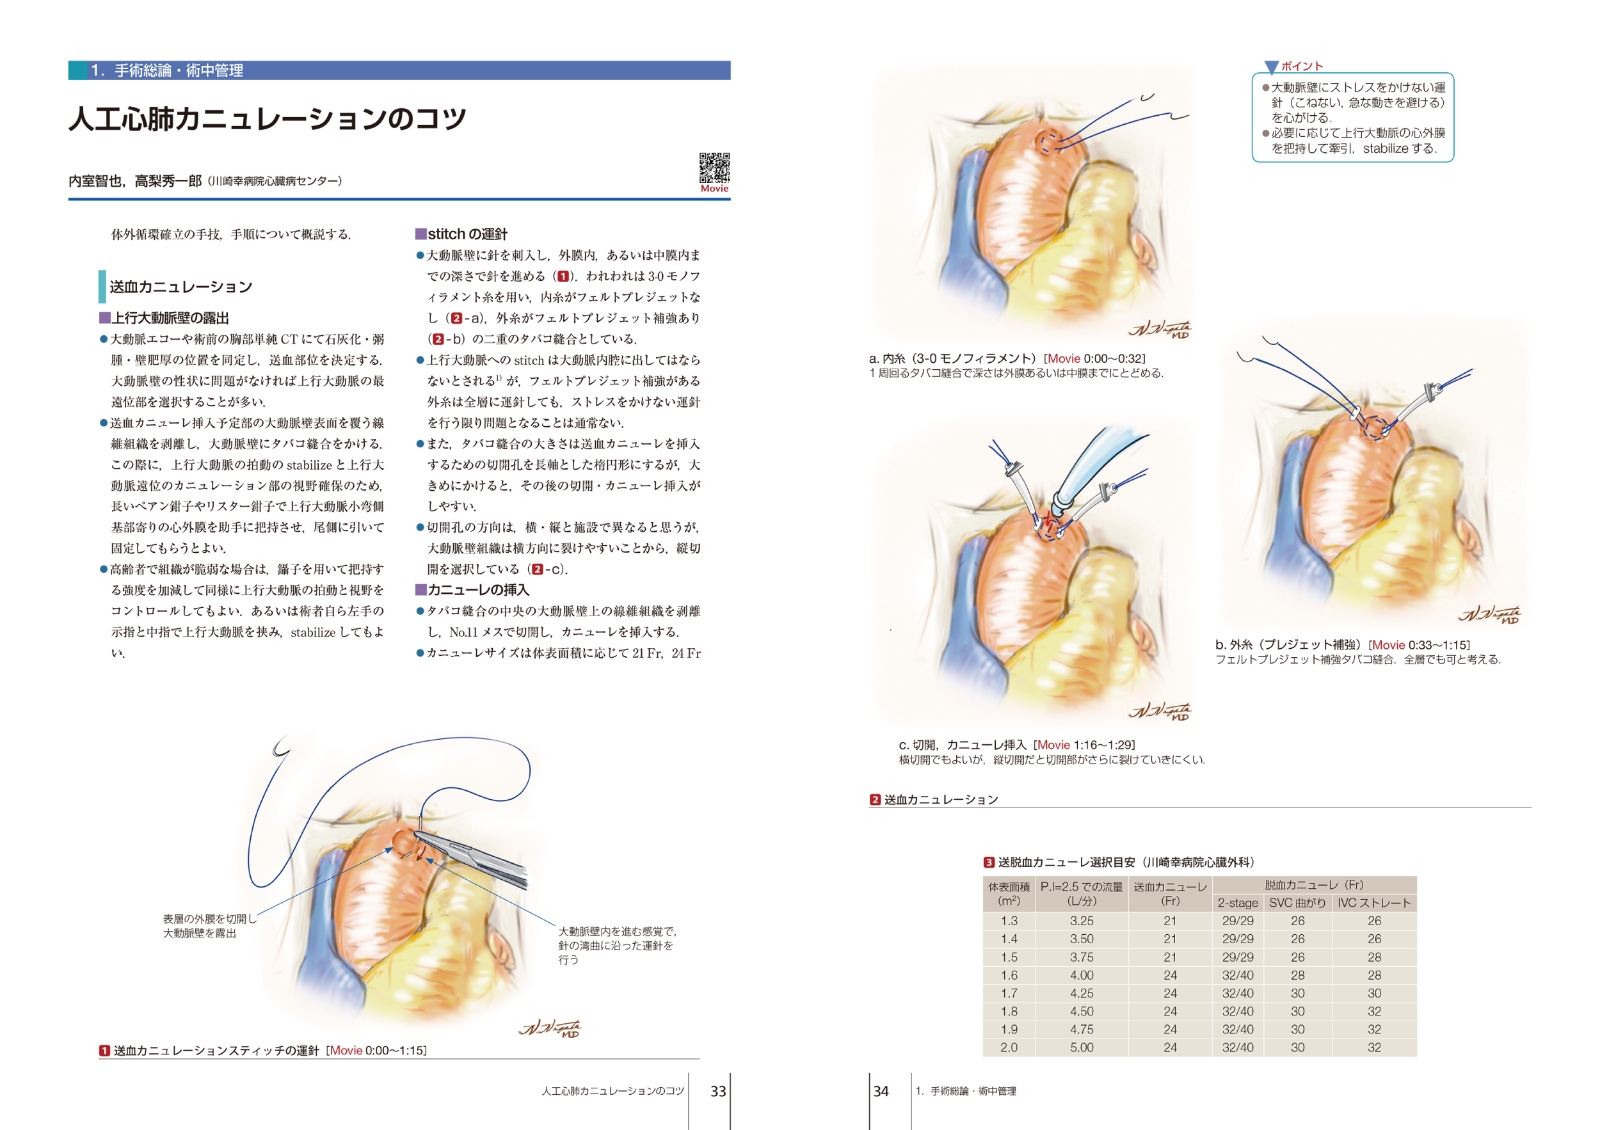 楽天ブックス: 心臓血管外科手術基本手技（第1巻） - 坂東 興 - 9784521744773 : 本